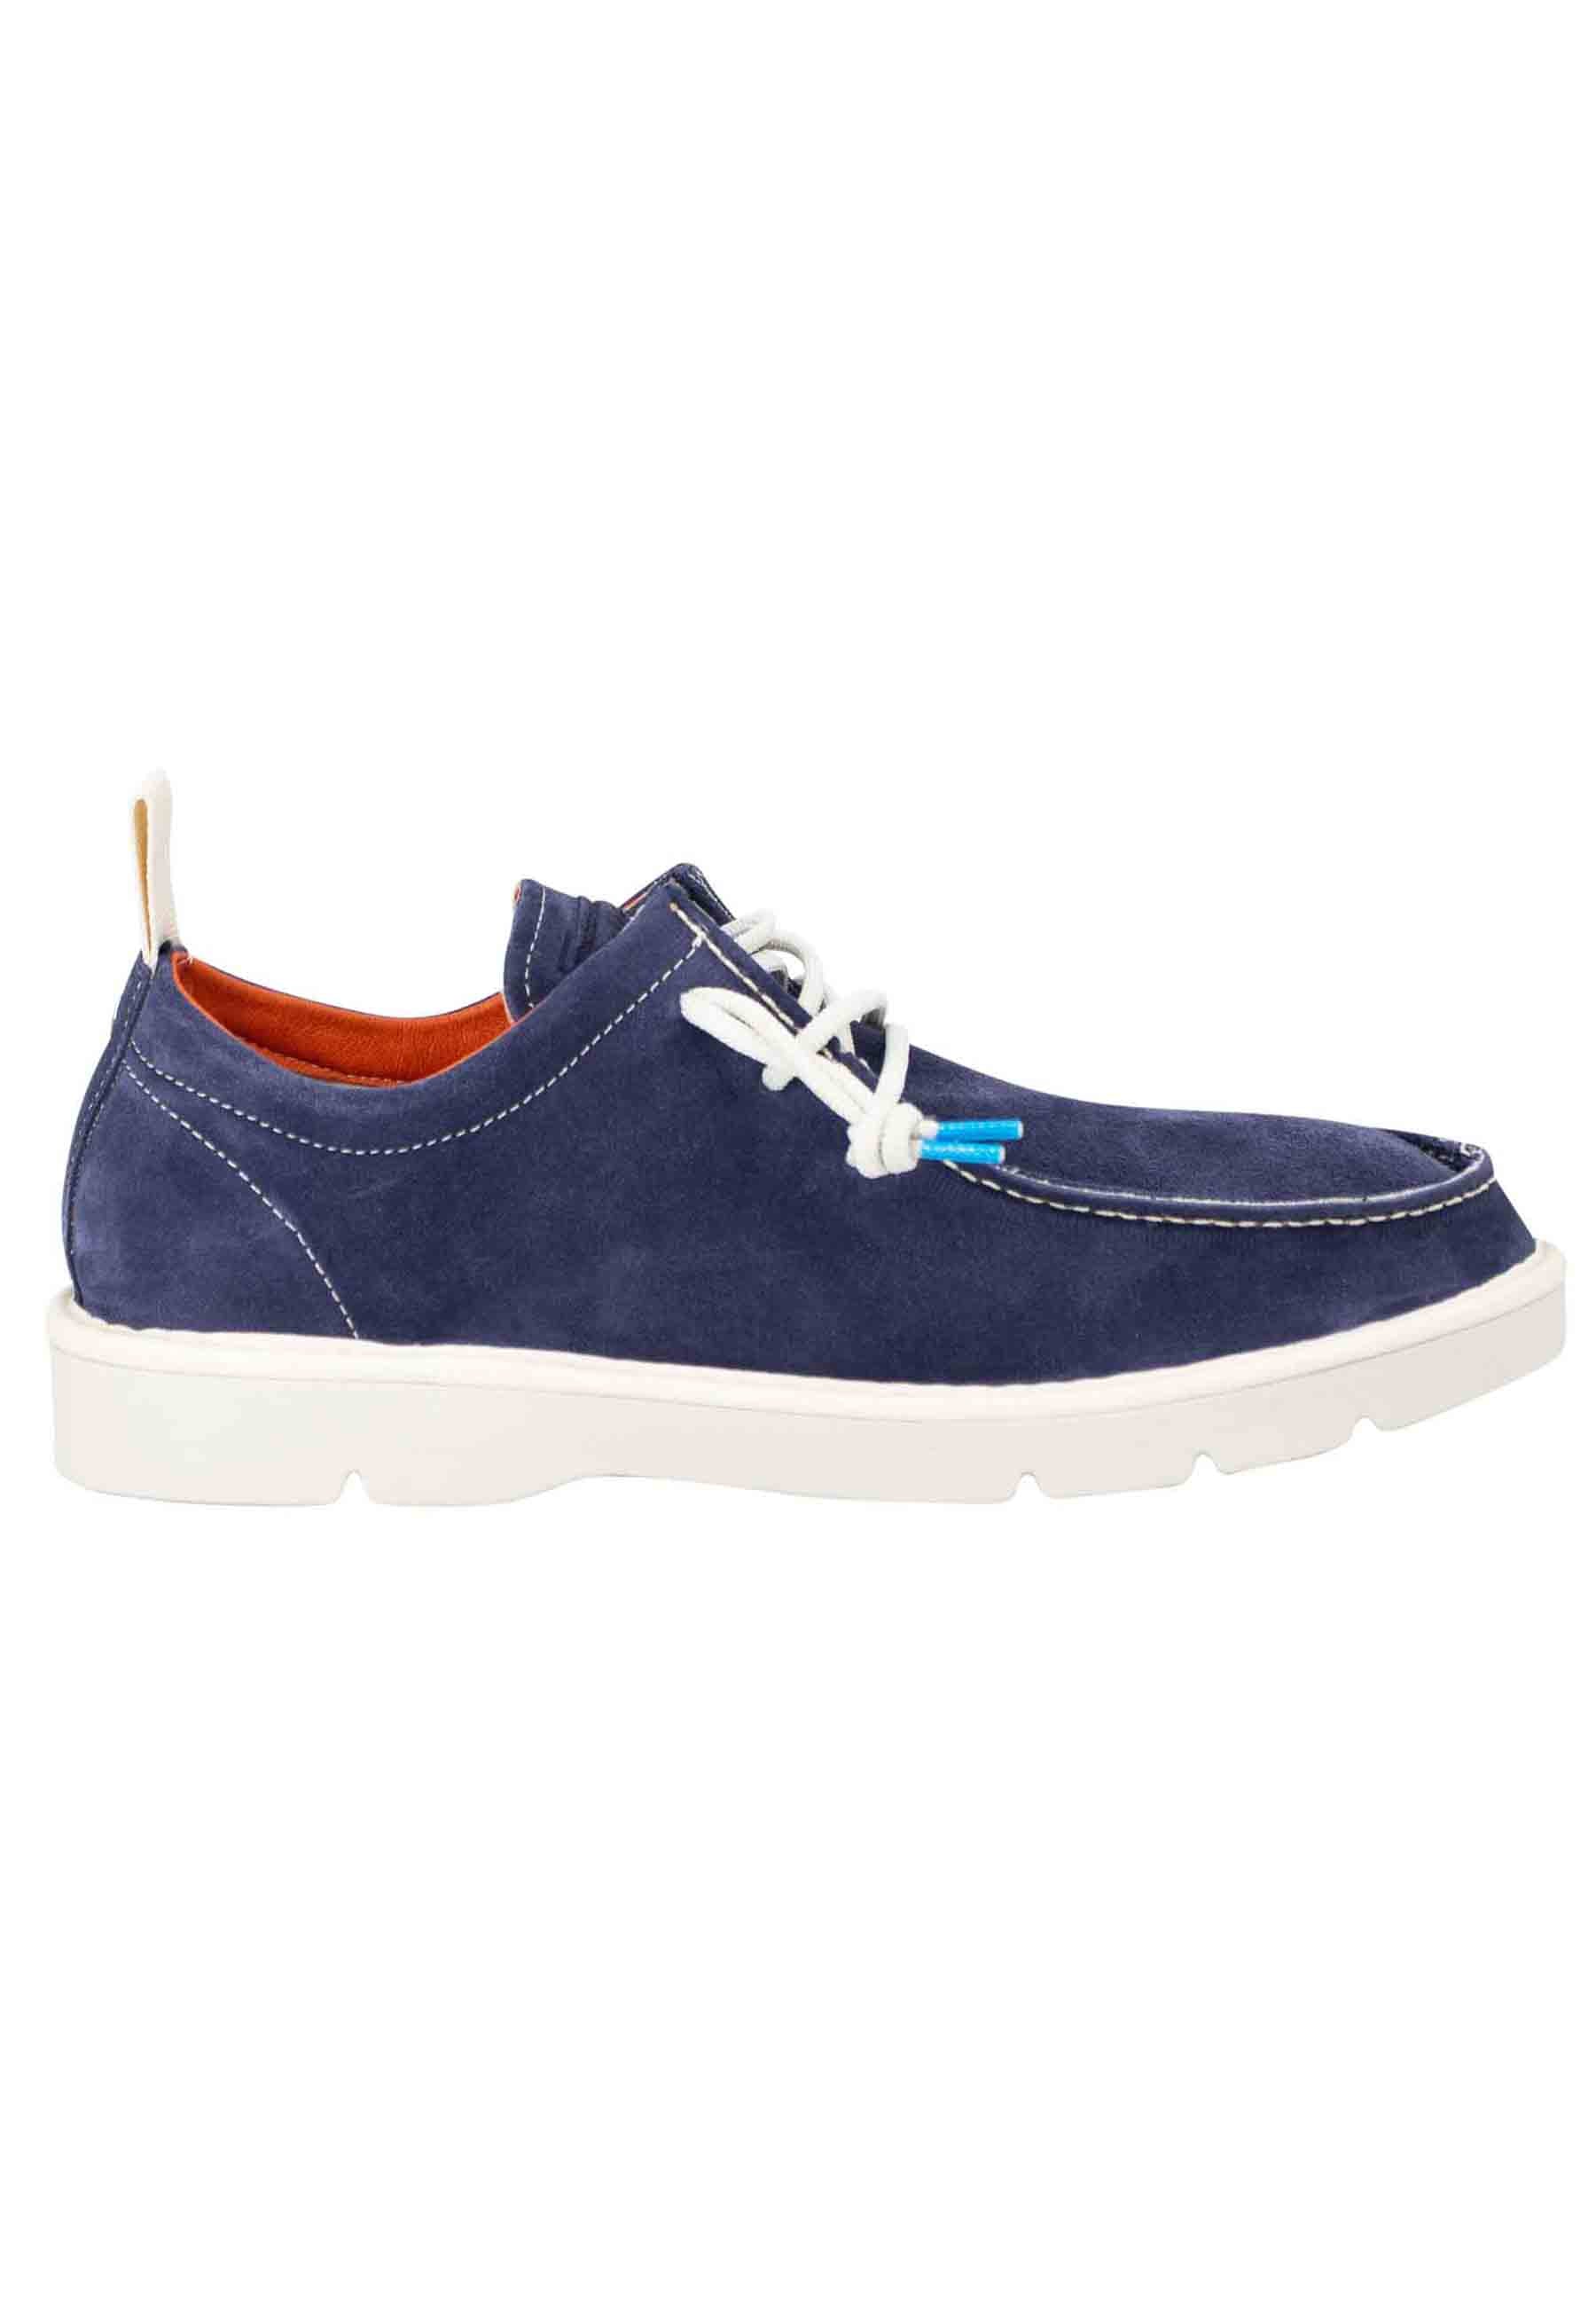 Chaussures à lacets homme Wally en daim bleu 0002T008